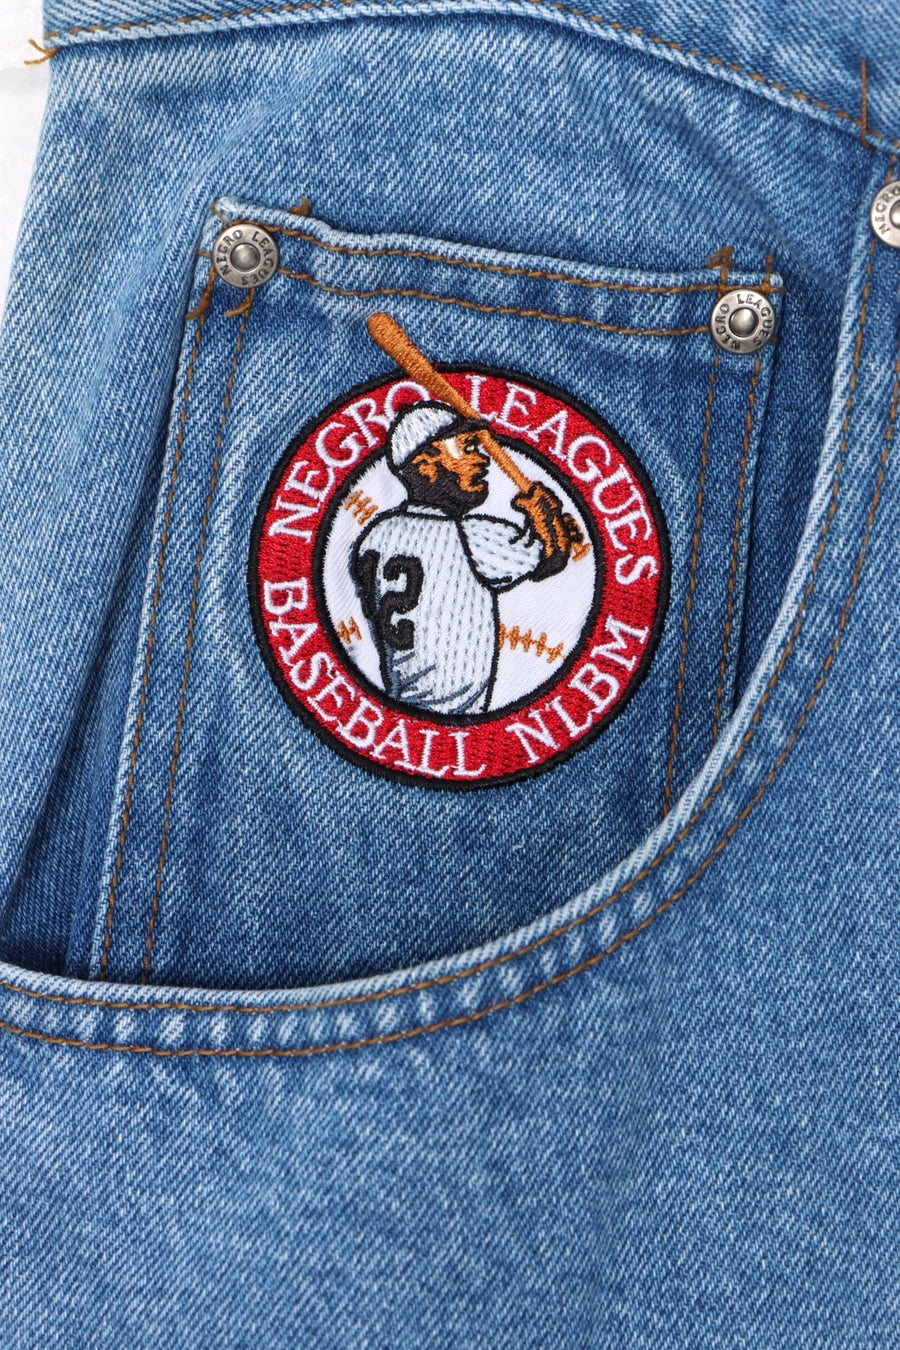 NLBM Baseball Team Logo Embroidered Jeans (38)